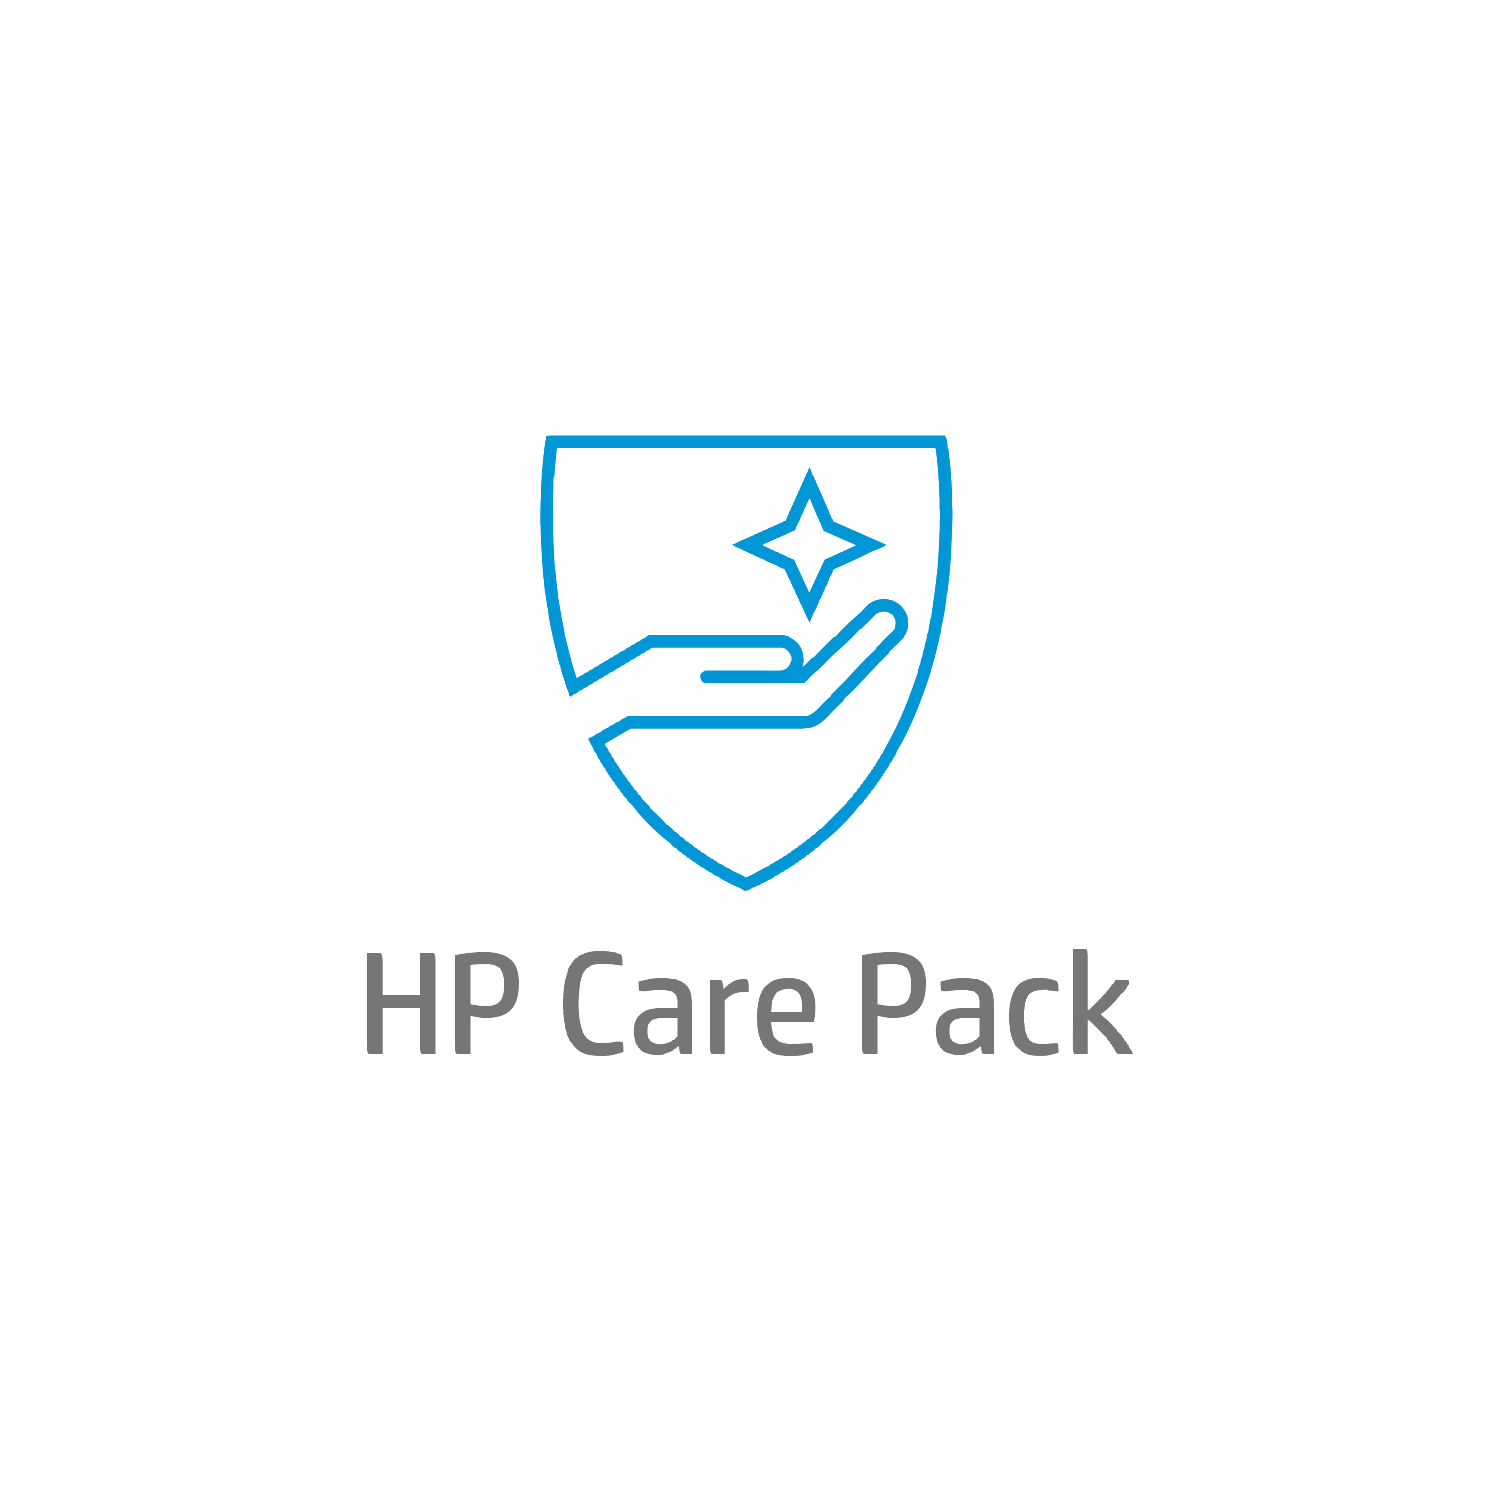 Bild von HP Active Care Lösungs-Support vor Ort am nächsten Arbeitstag für Desktops - 3 Jahre - Active Care - Remote und vor Ort - Unter Garantie - Standardarbeitstage - 9 Stunden - 3 Jahre - Reaktion am nächsten Arbeitstag